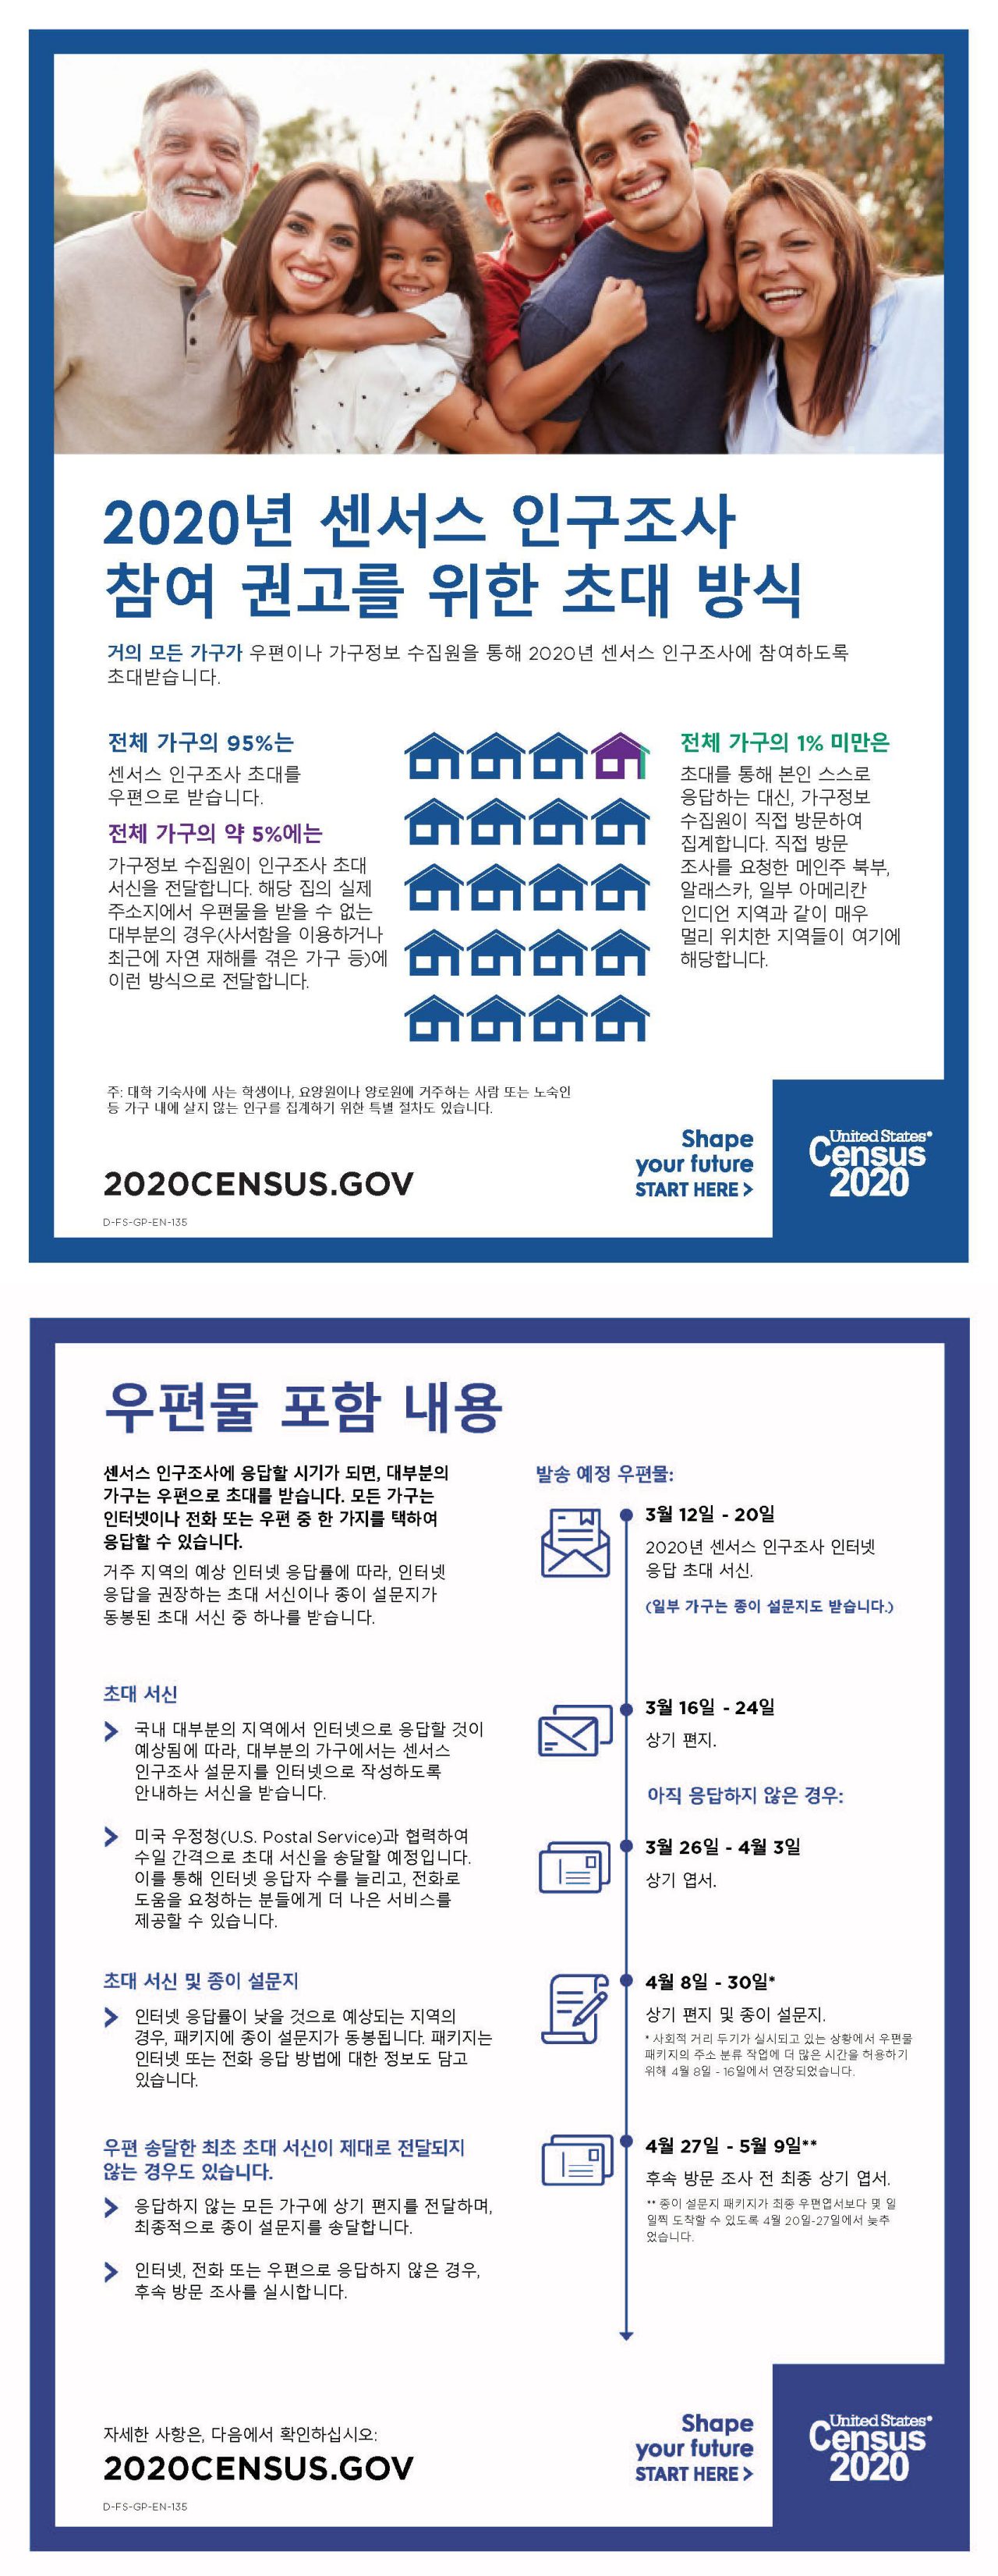 2020년 센서스 인구조사참여 권고를 위한 초대 방식